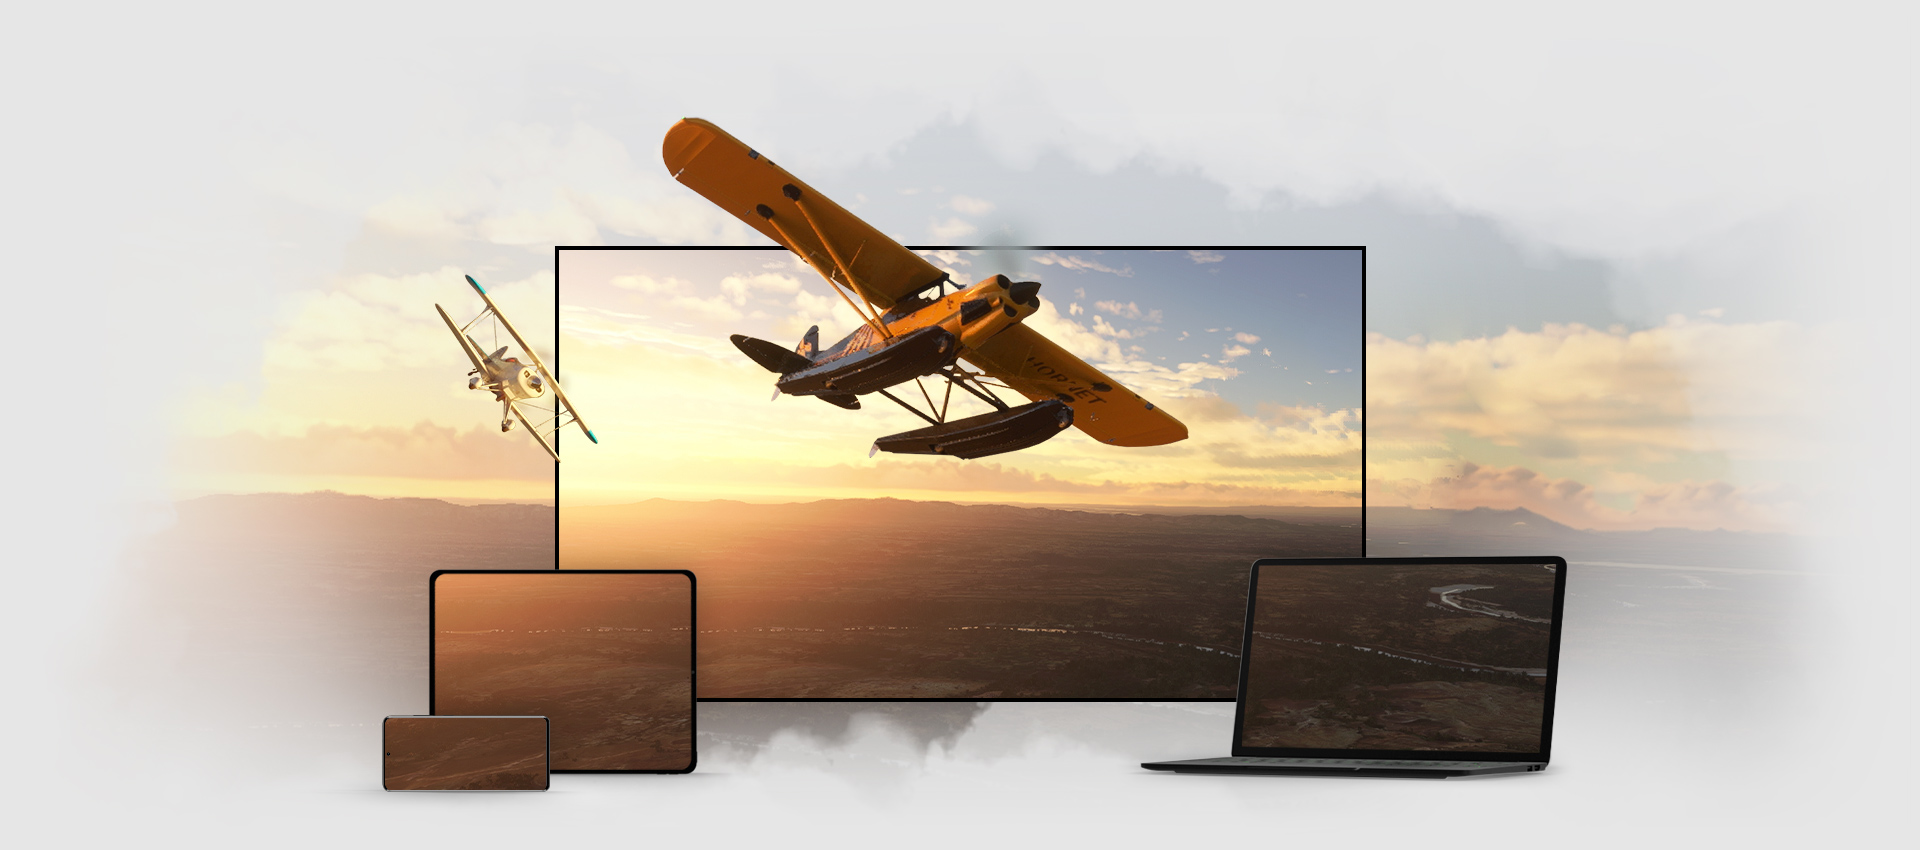 Microsoft Flight Simulator -pelikuva näkyy useiden laitteiden näytöissä, kuten kannettavassa tietokoneessa, televisiossa, puhelimessa ja tabletissa.